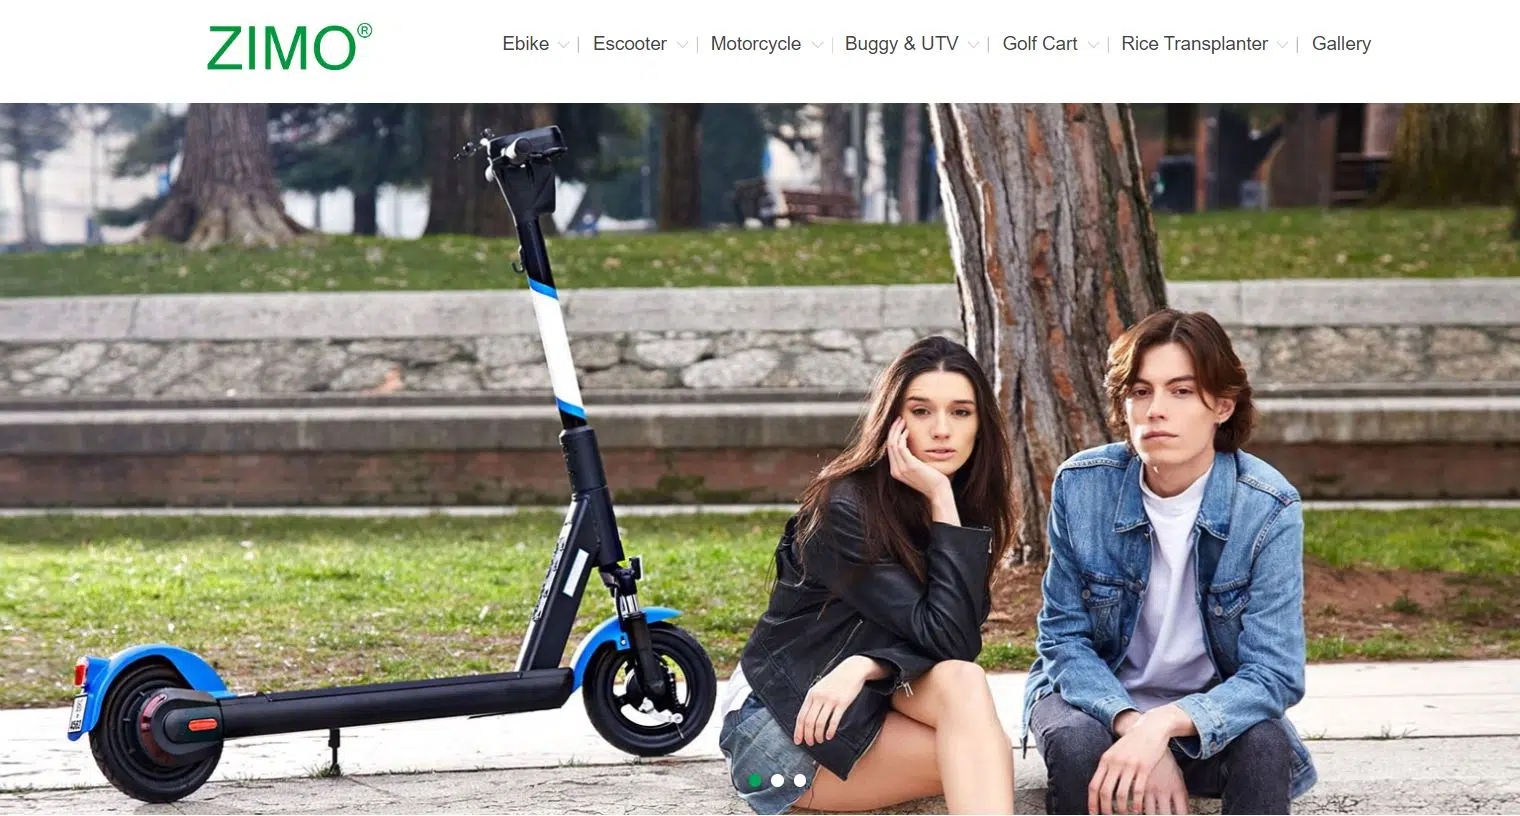 Capture d'écran du site Zimo, qui est un fabricant de scooters électriques urbains basé en Chine.